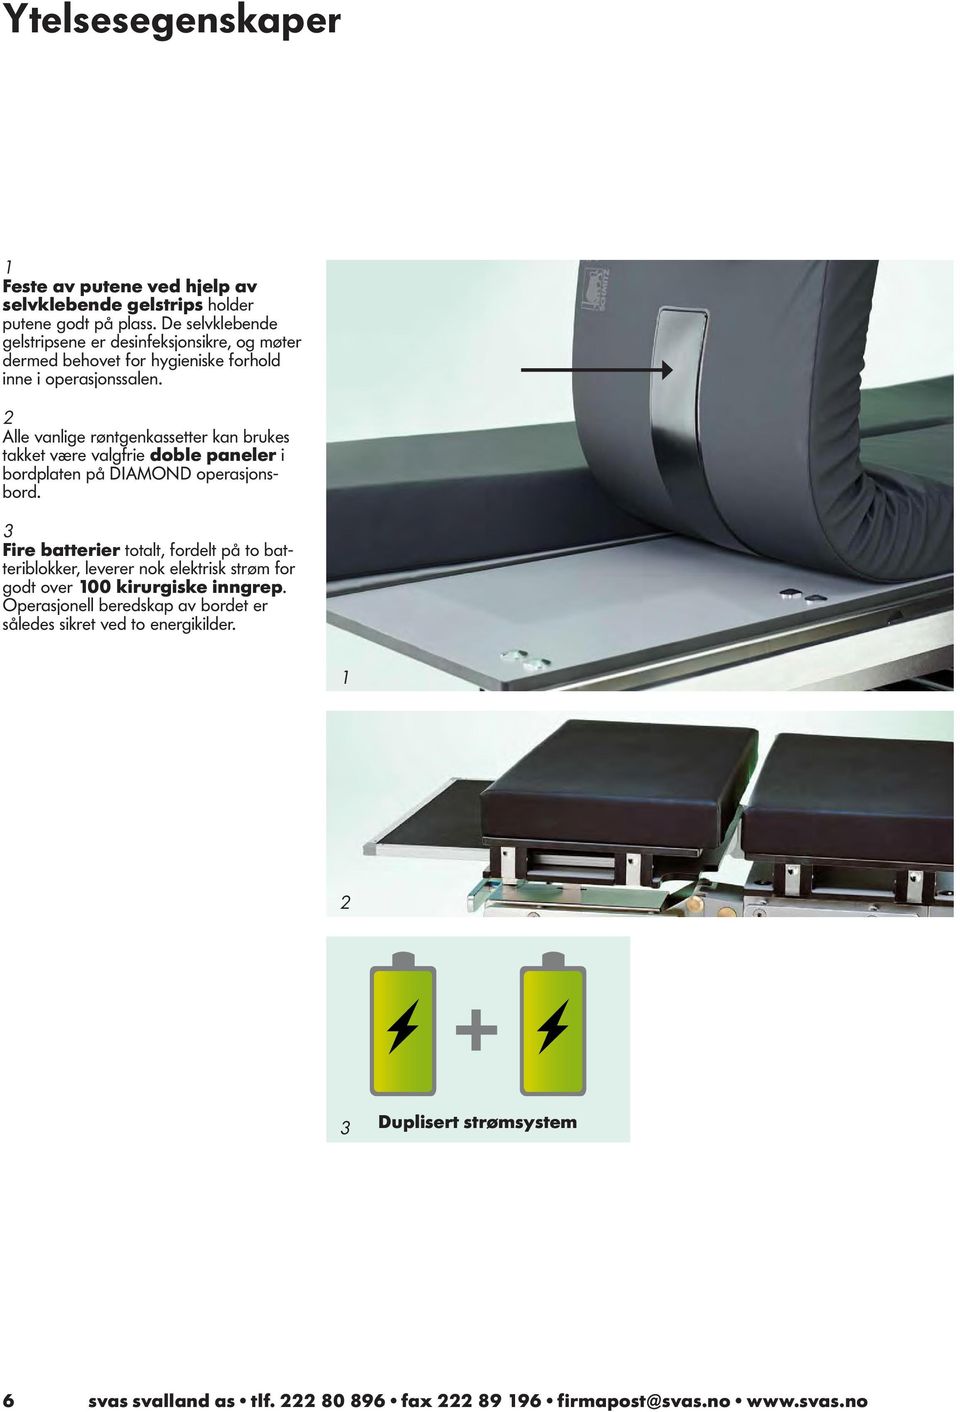 2 Alle vanlige røntgenkassetter kan brukes takket være valgfrie doble paneler i bordplaten på DIAMOND operasjonsbord.